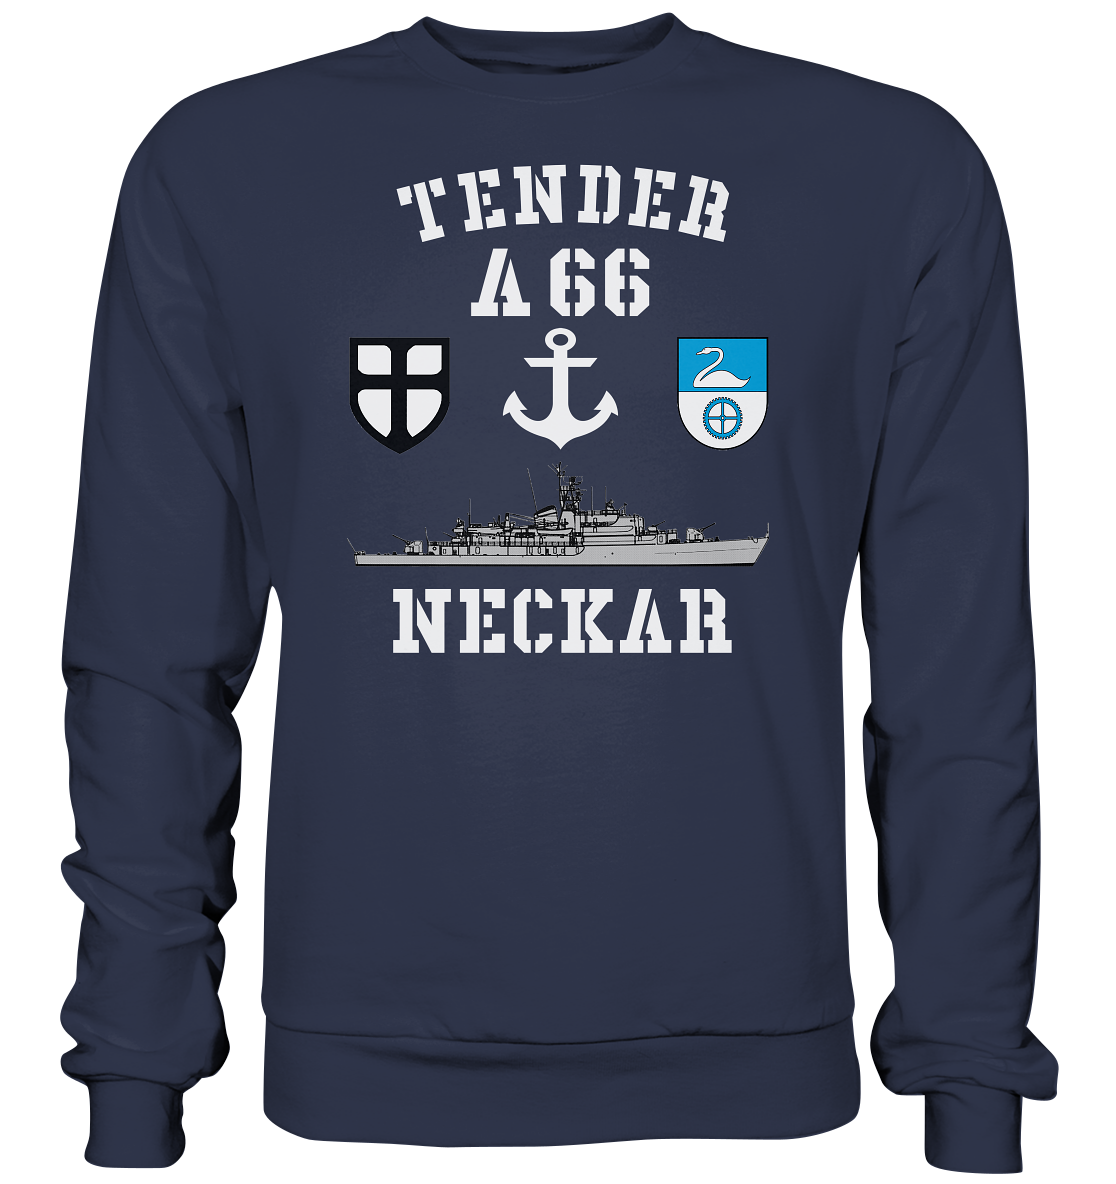 Tender A66 NECKAR 7.SG ANKER - Premium Sweatshirt